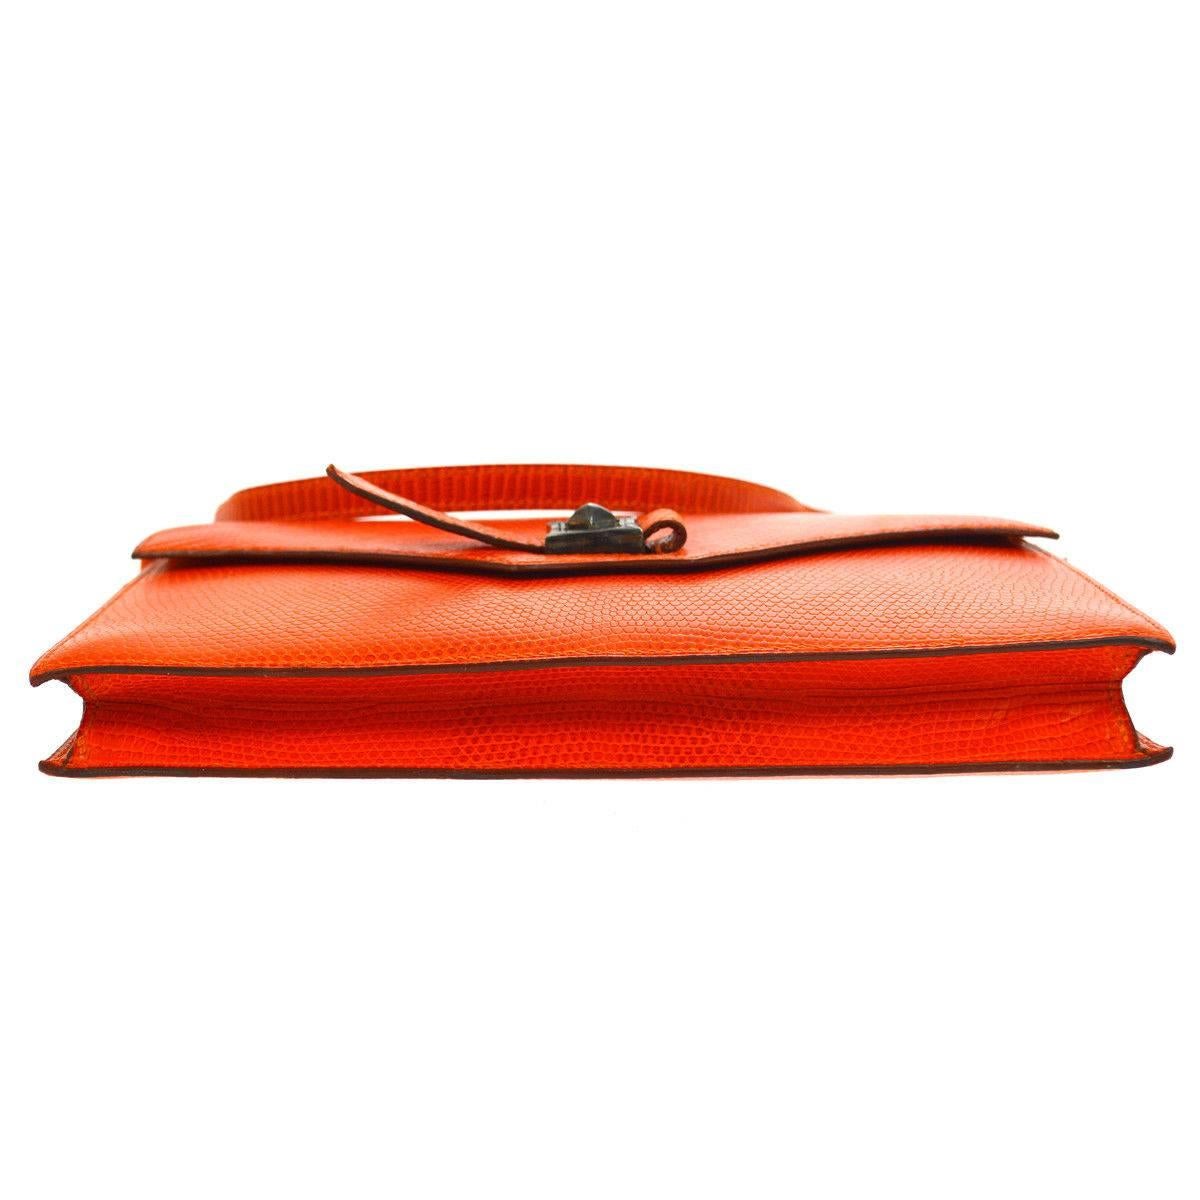 Red Hermes Limited Edition Lizard Leather Envelope Evening Clutch Shoulder Flap Bag